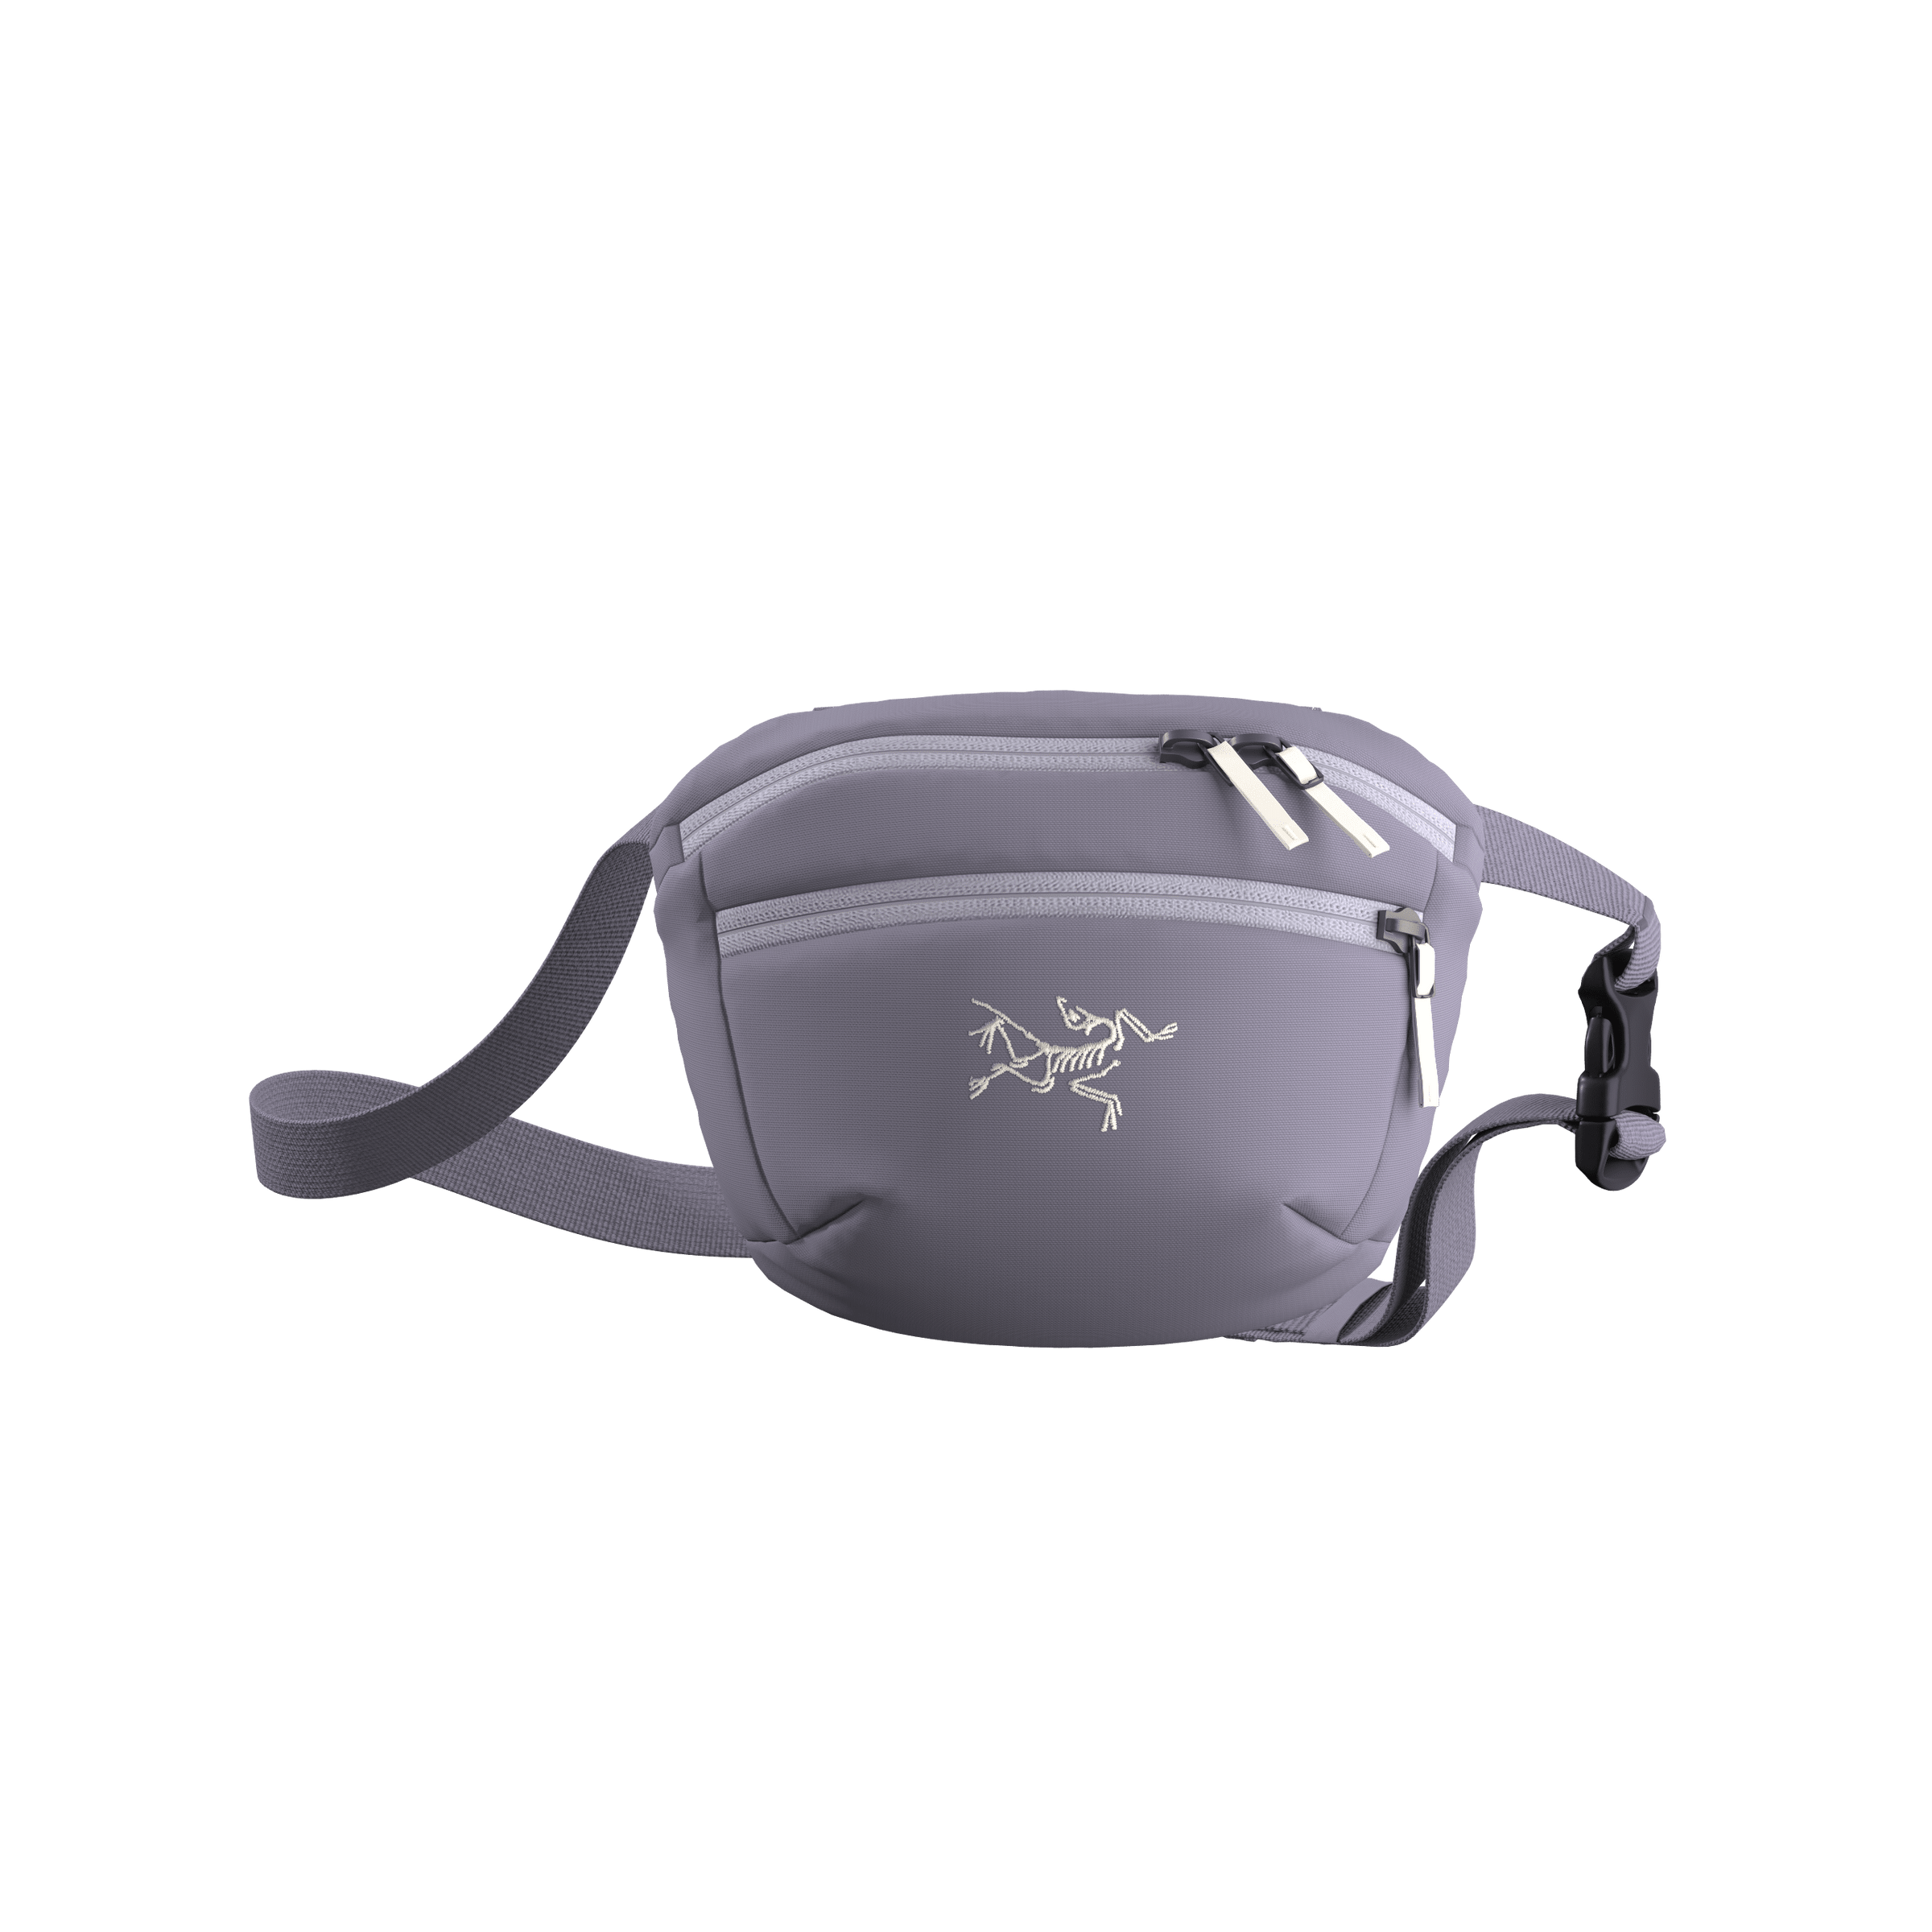 Arc'teryx Mantis 1 Waist Pack – Gear Up For Outdoors